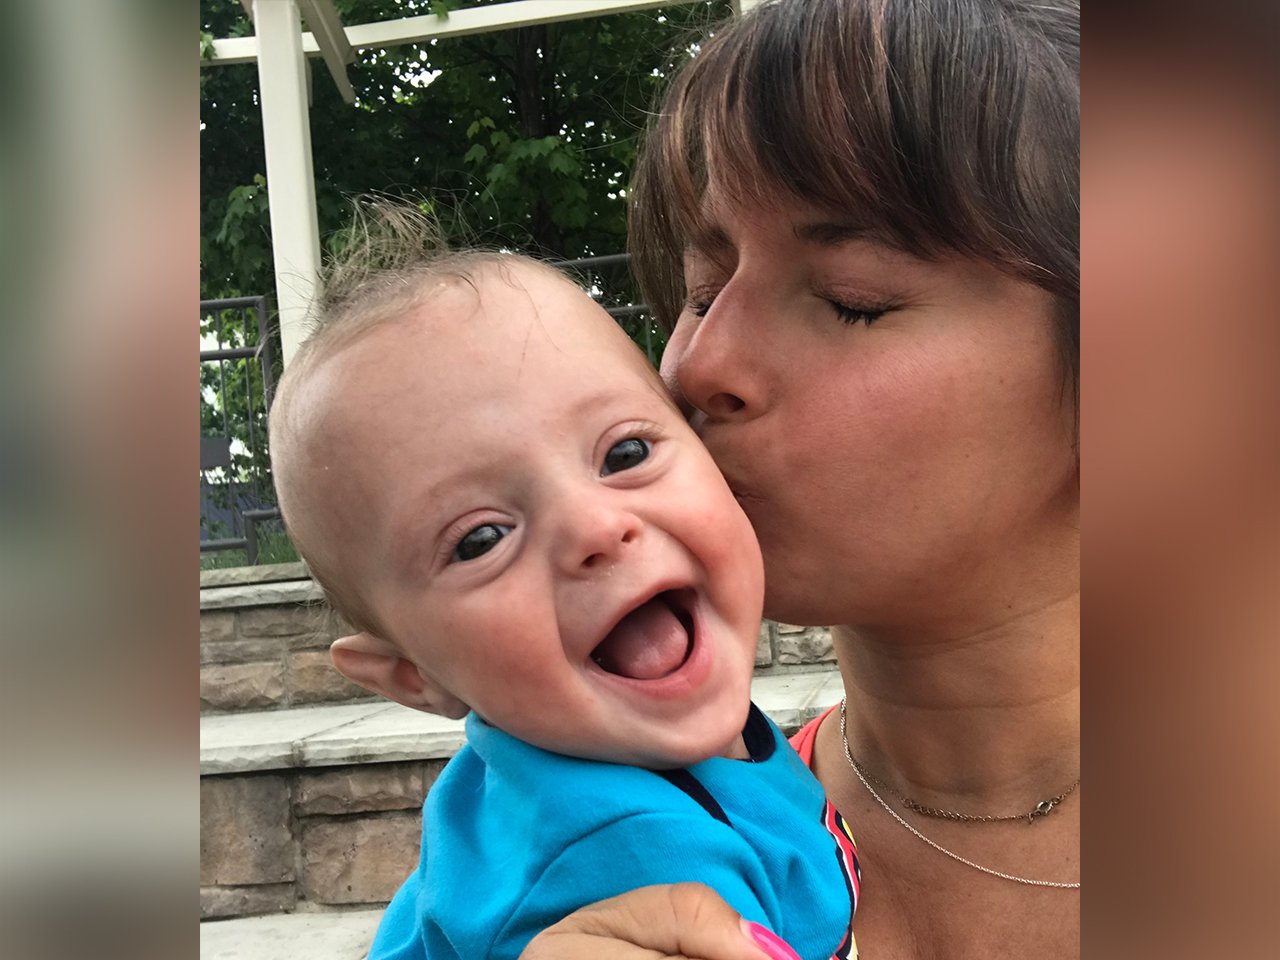 Forfatter kysser sønn etter å ha mistet en tvilling i livmoren